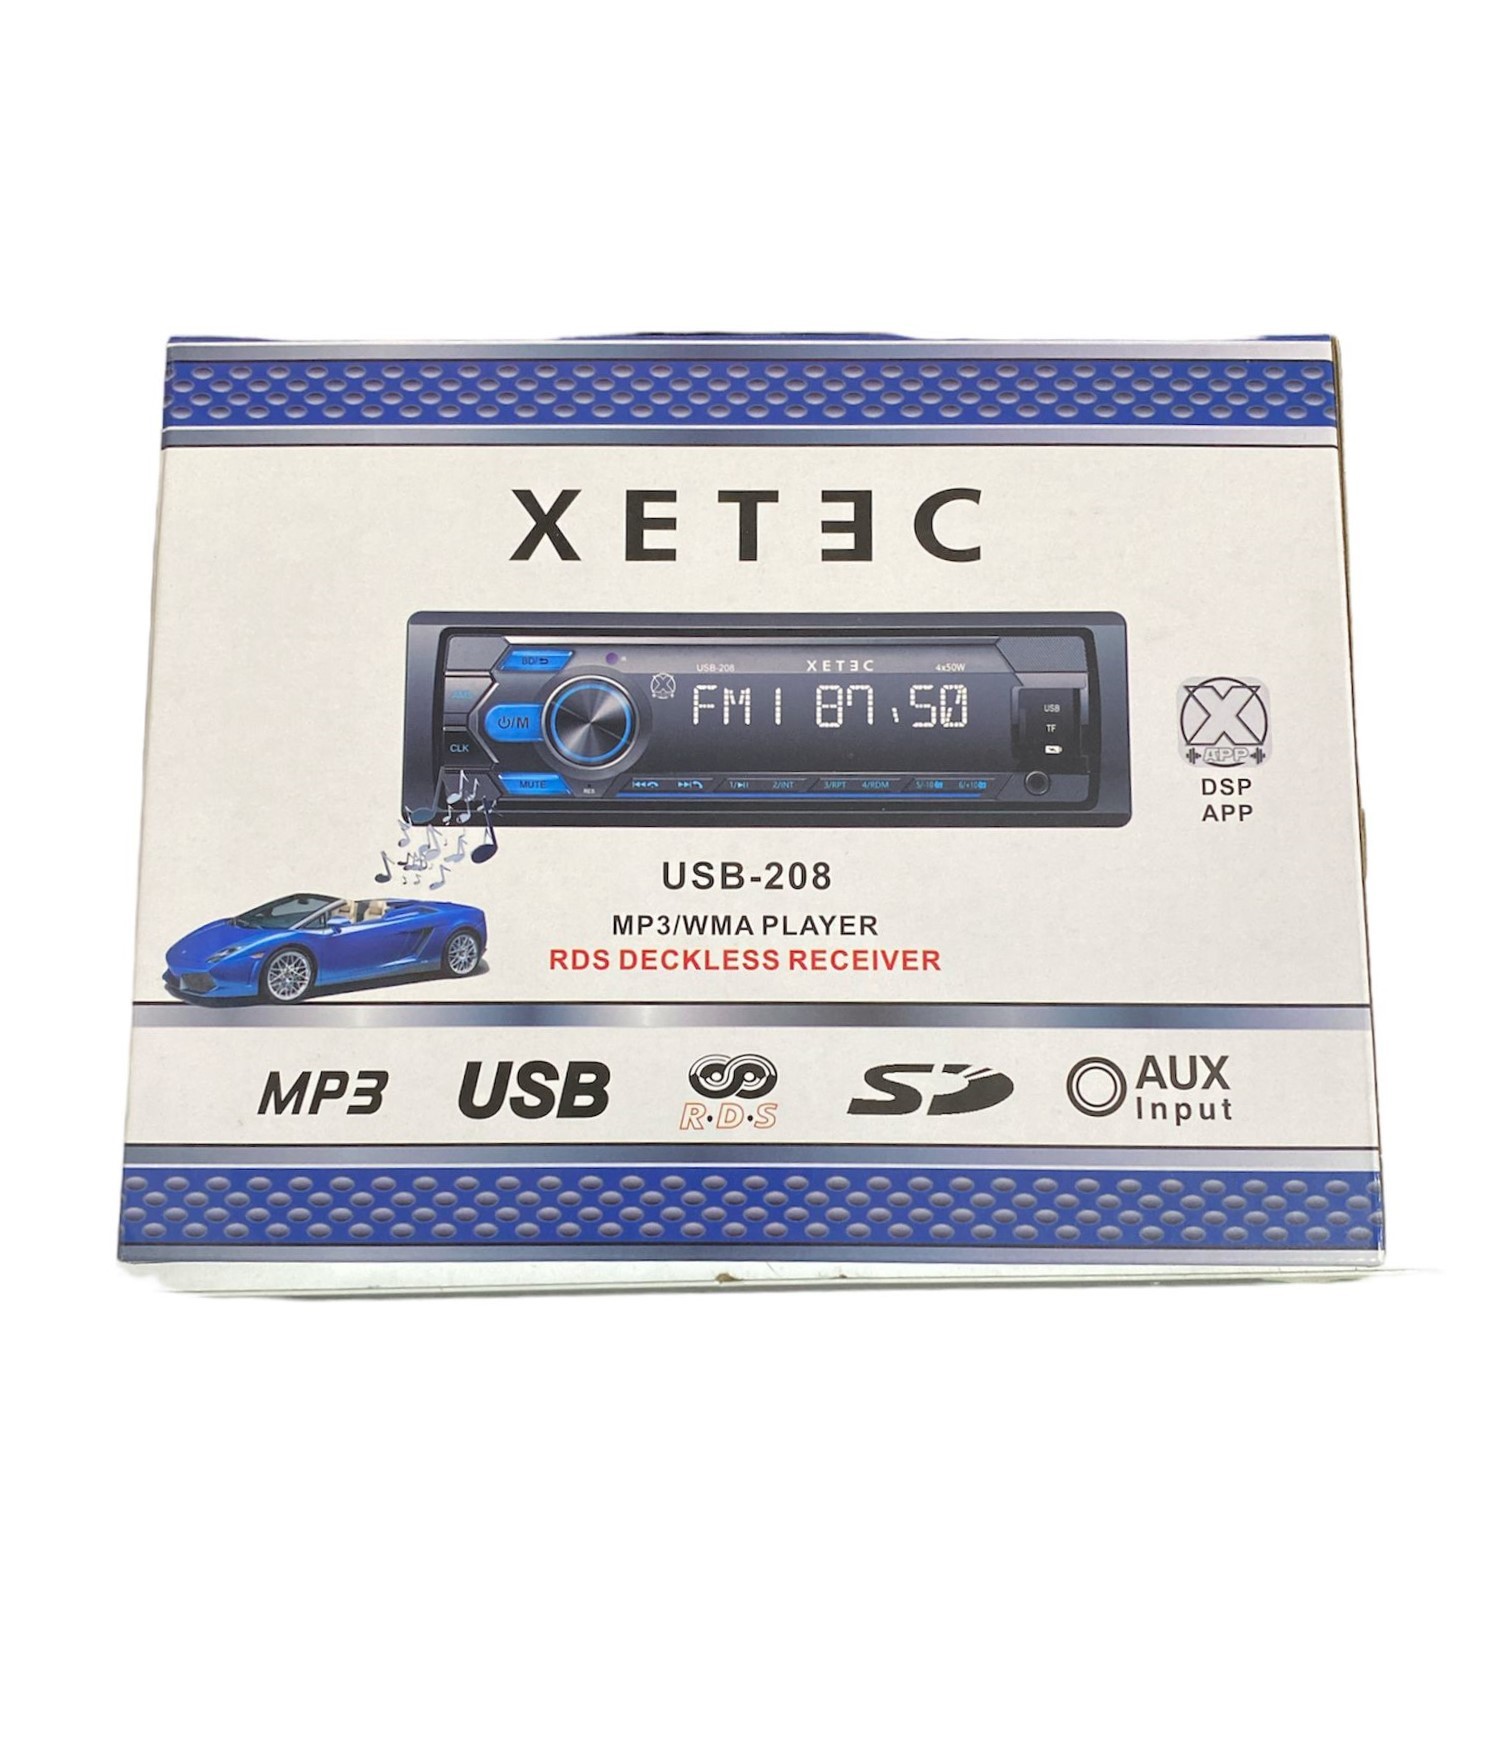 XETEC USB-208 OTO TEYP